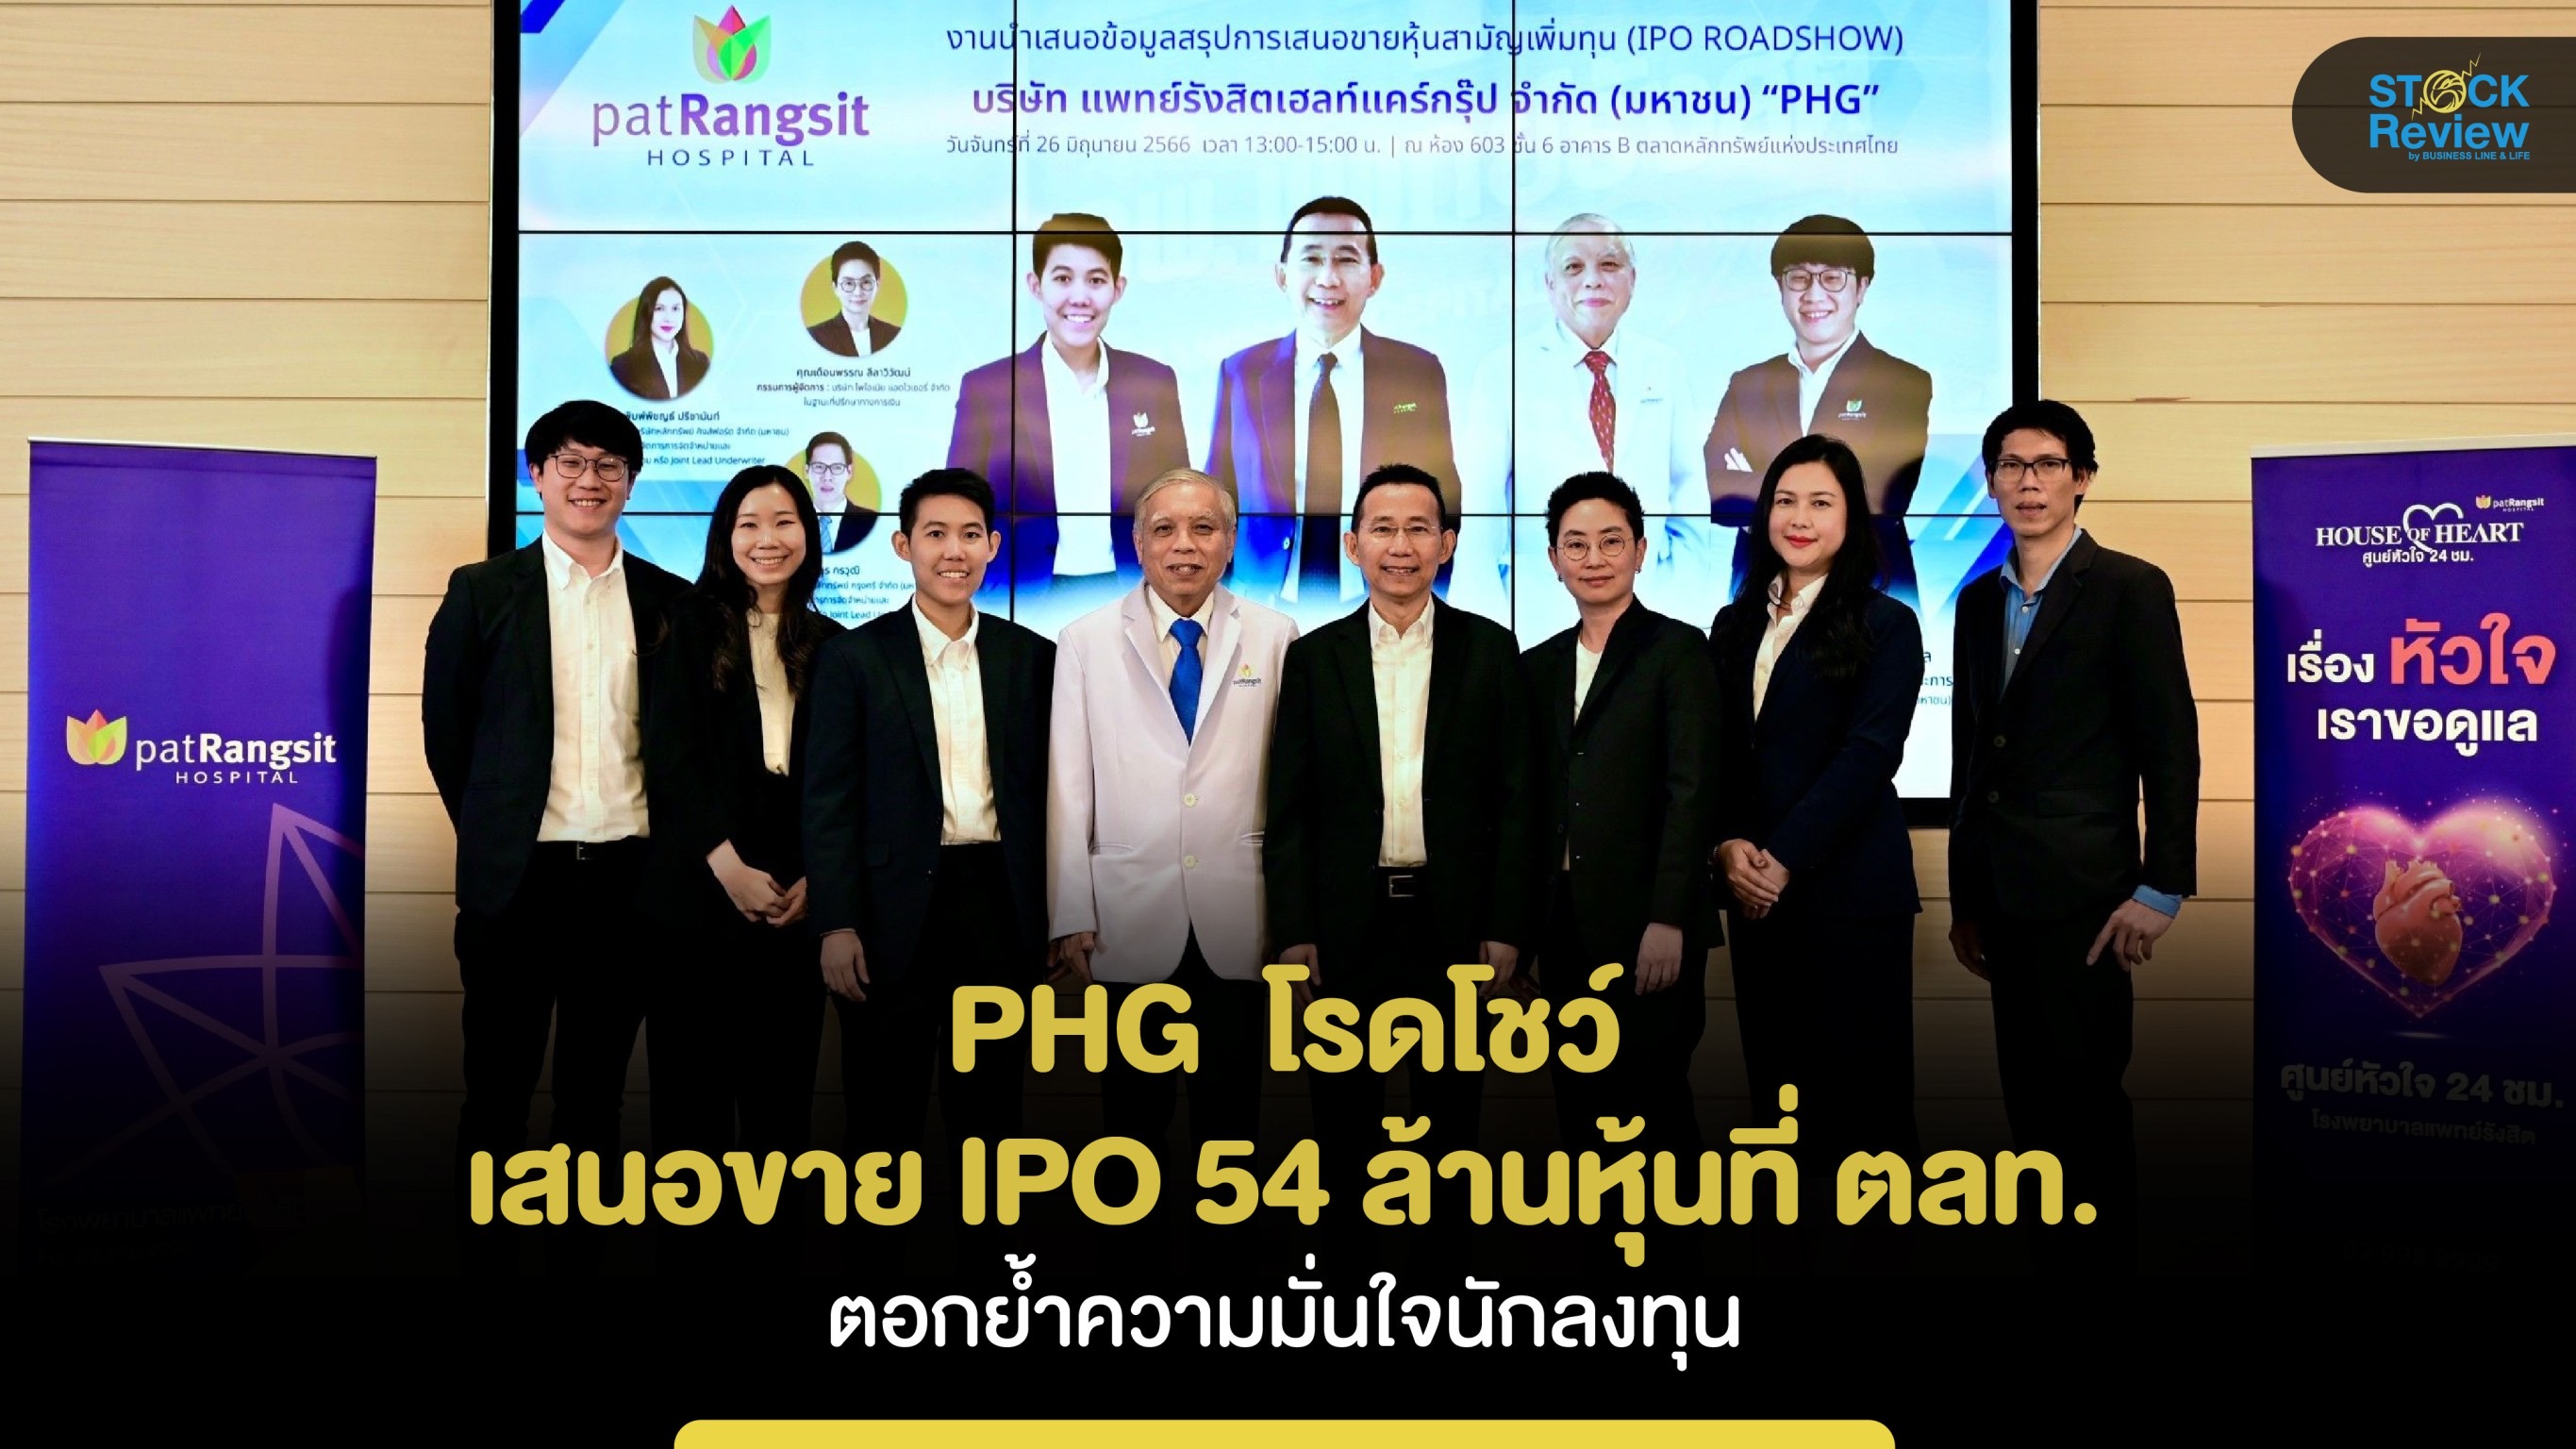 “PHG” โรดโชว์ เสนอขาย IPO 54 ล้านหุ้น นักลงทุนตอบรับพื้นฐานธุรกิจแกร่ง